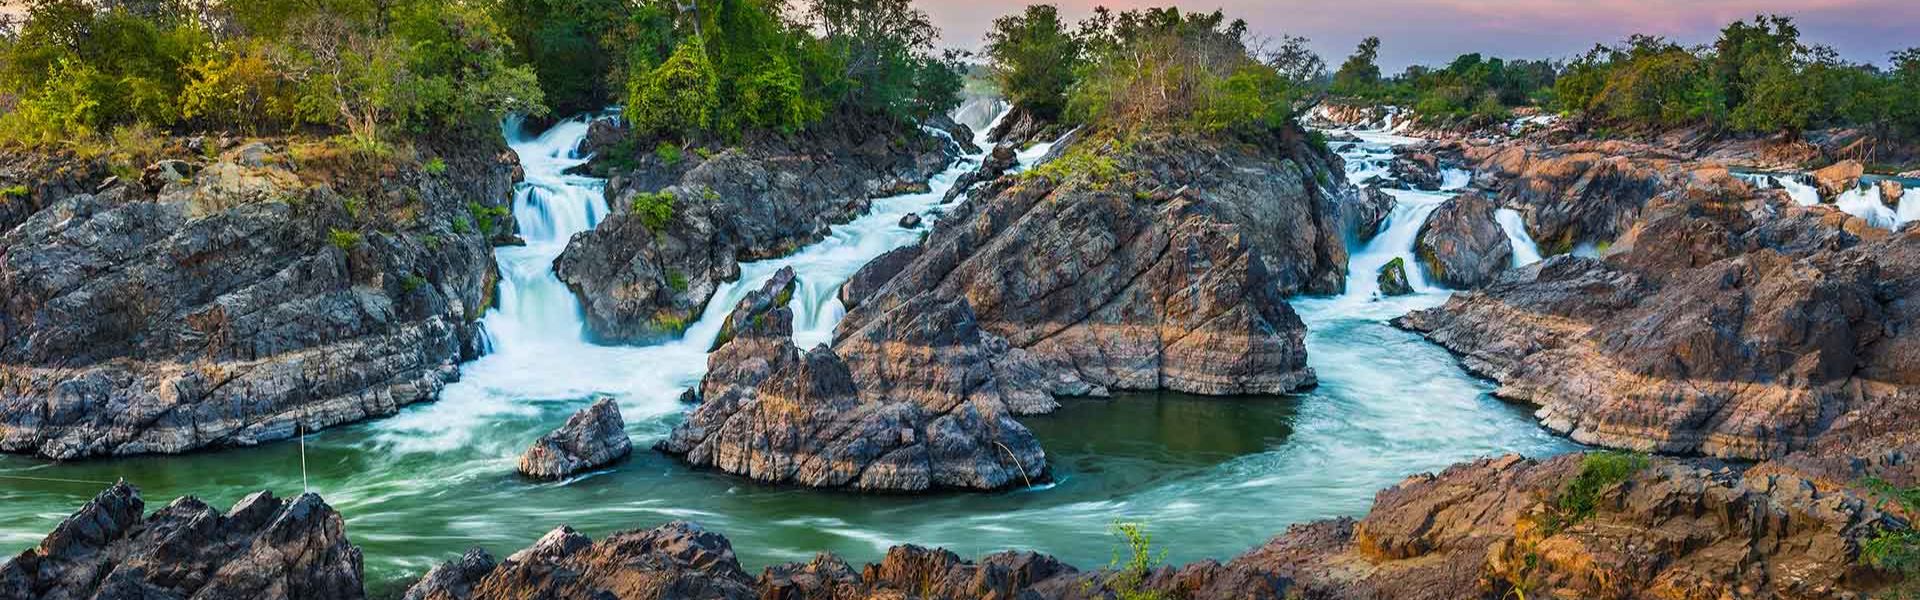 Guía para explorar el sur de Laos - Viajes a Laos